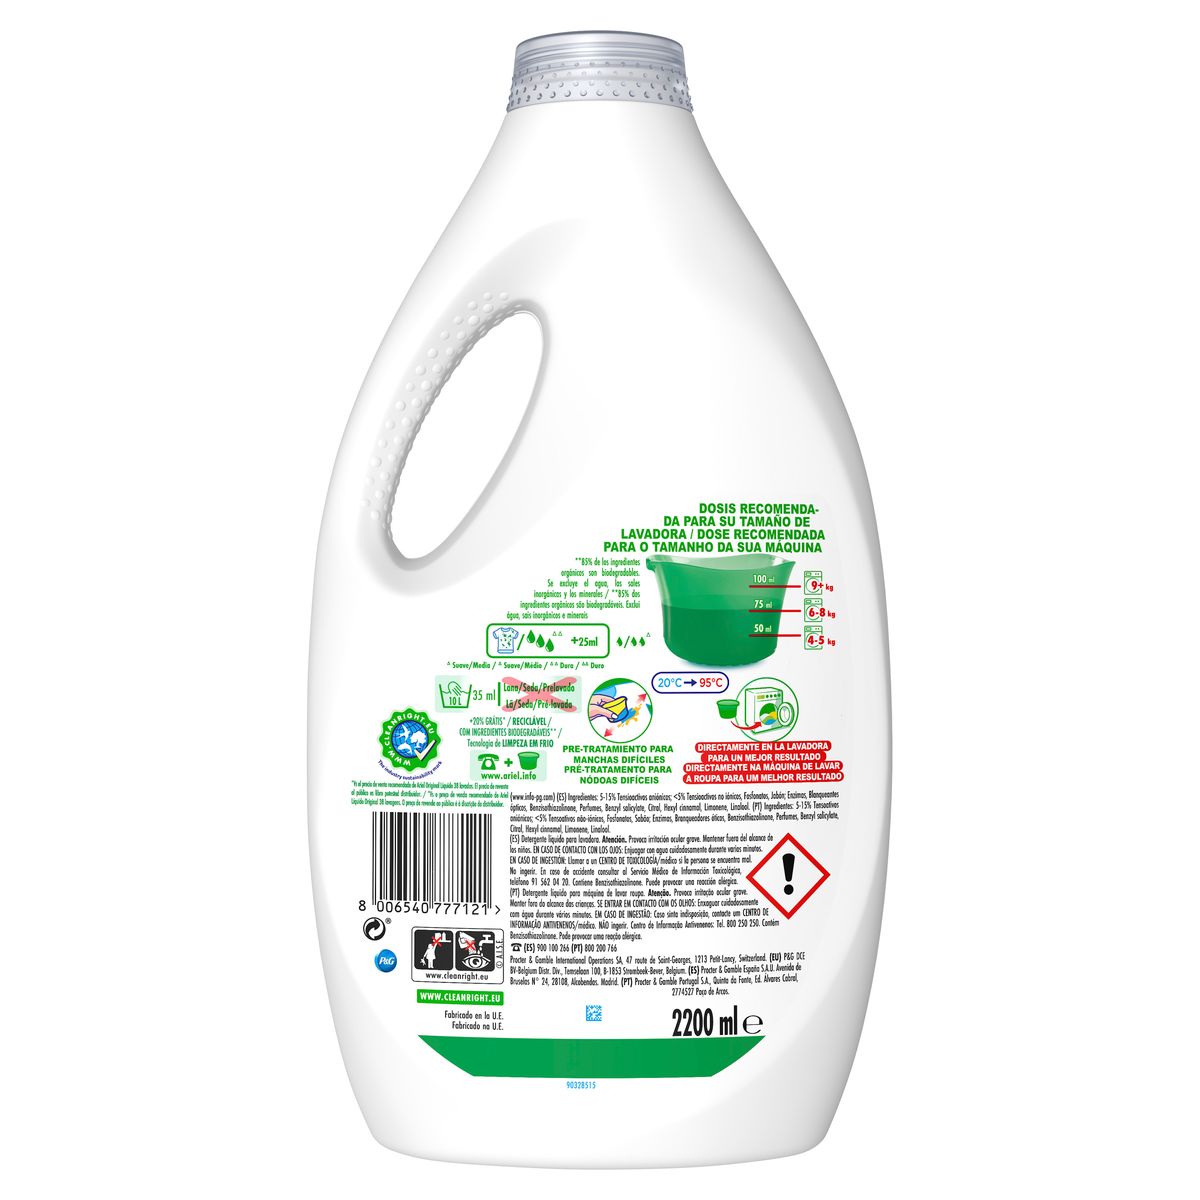 Comprar Detergente liquido color ariel en Supermercados MAS Online